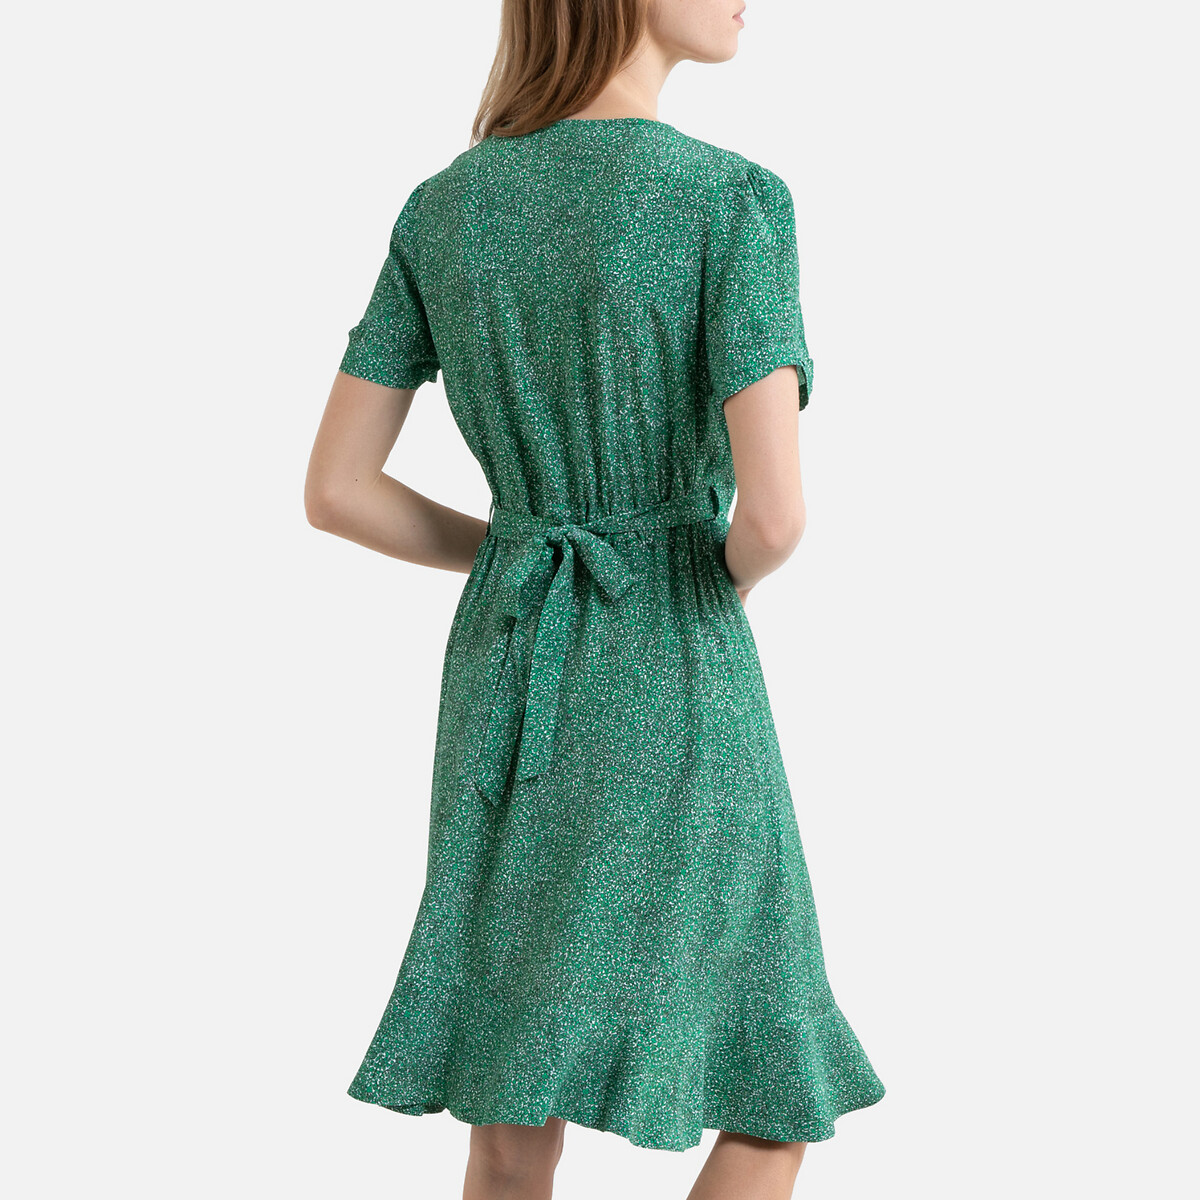 Платье La Redoute С запахом с короткими рукавами PERRINE 36 (FR) - 42 (RUS) зеленый, размер 36 (FR) - 42 (RUS) С запахом с короткими рукавами PERRINE 36 (FR) - 42 (RUS) зеленый - фото 3